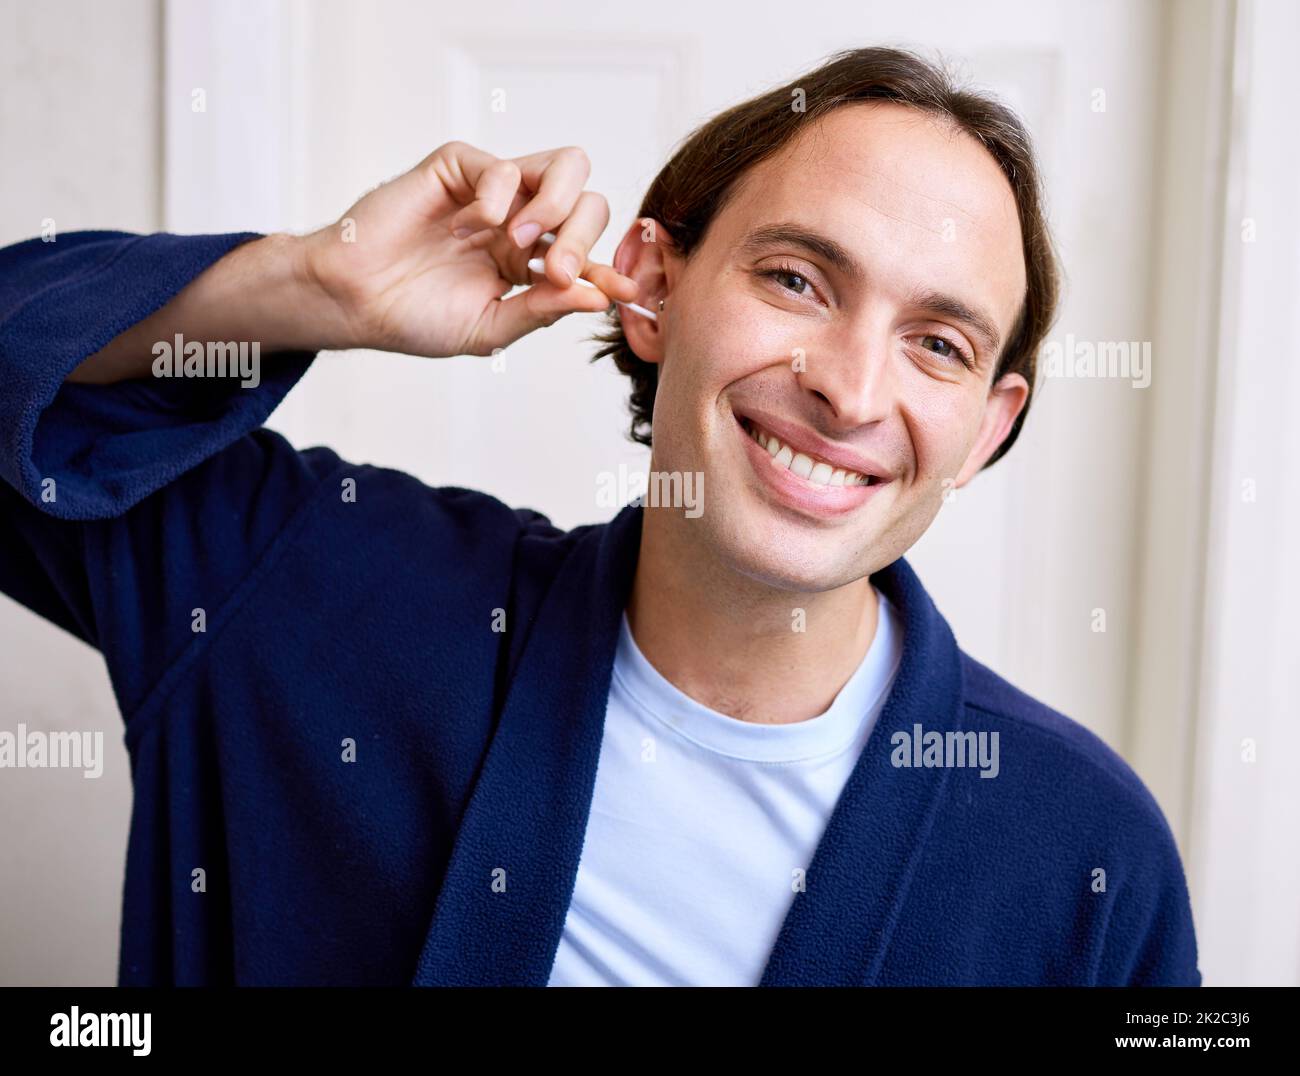 Sie sagen immer, dass sie keinen Ohrstöpsel verwenden sollen. Aufnahme eines jungen Mannes, der sein Ohr mit einem Ohrstöpsel reinigte. Stockfoto